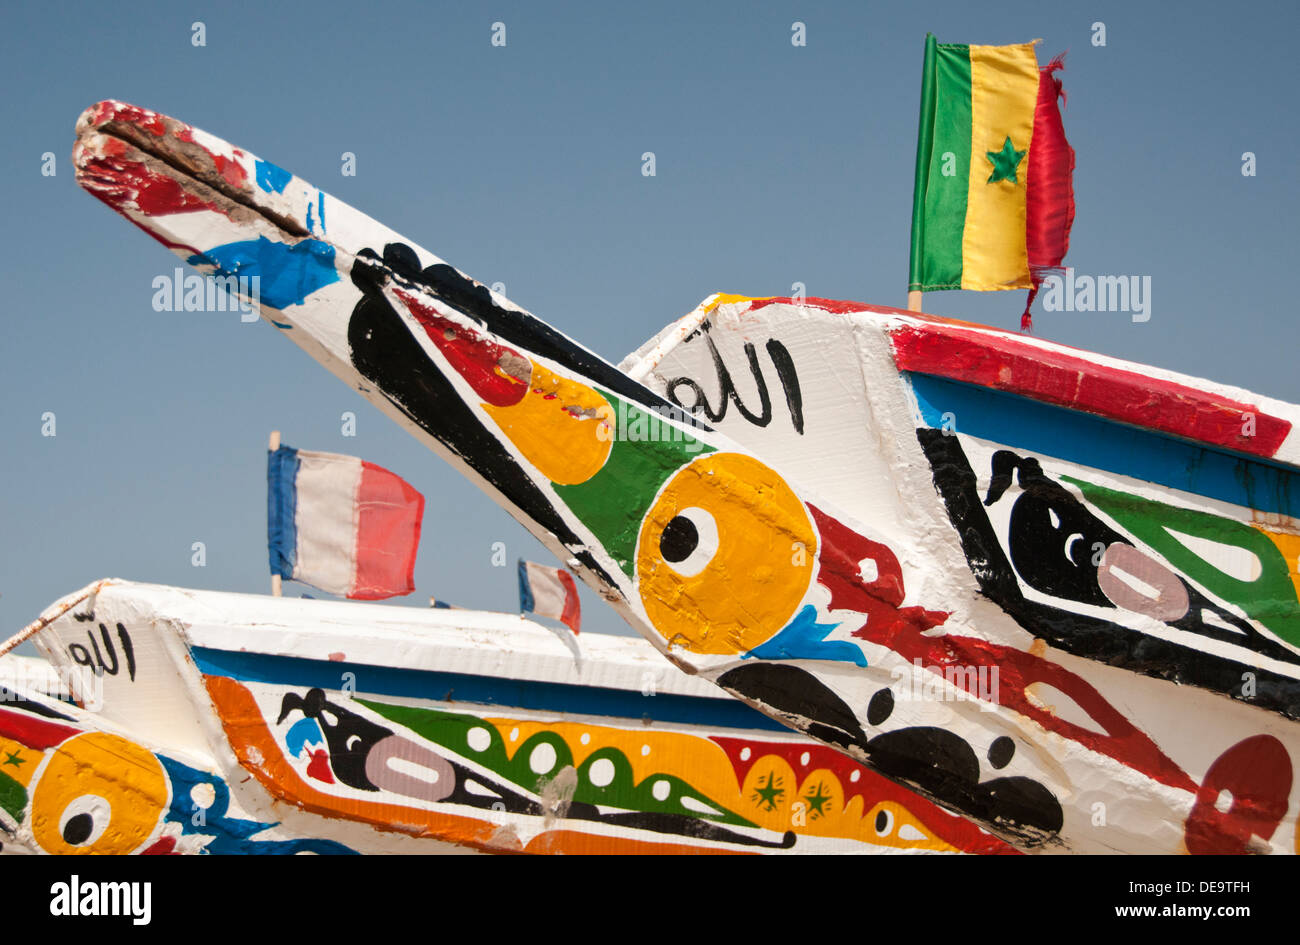 Bateaux de pêche gambienne peint de couleurs vives, village de pêcheurs de Tanji, Gambie, Afrique de l'Ouest Banque D'Images